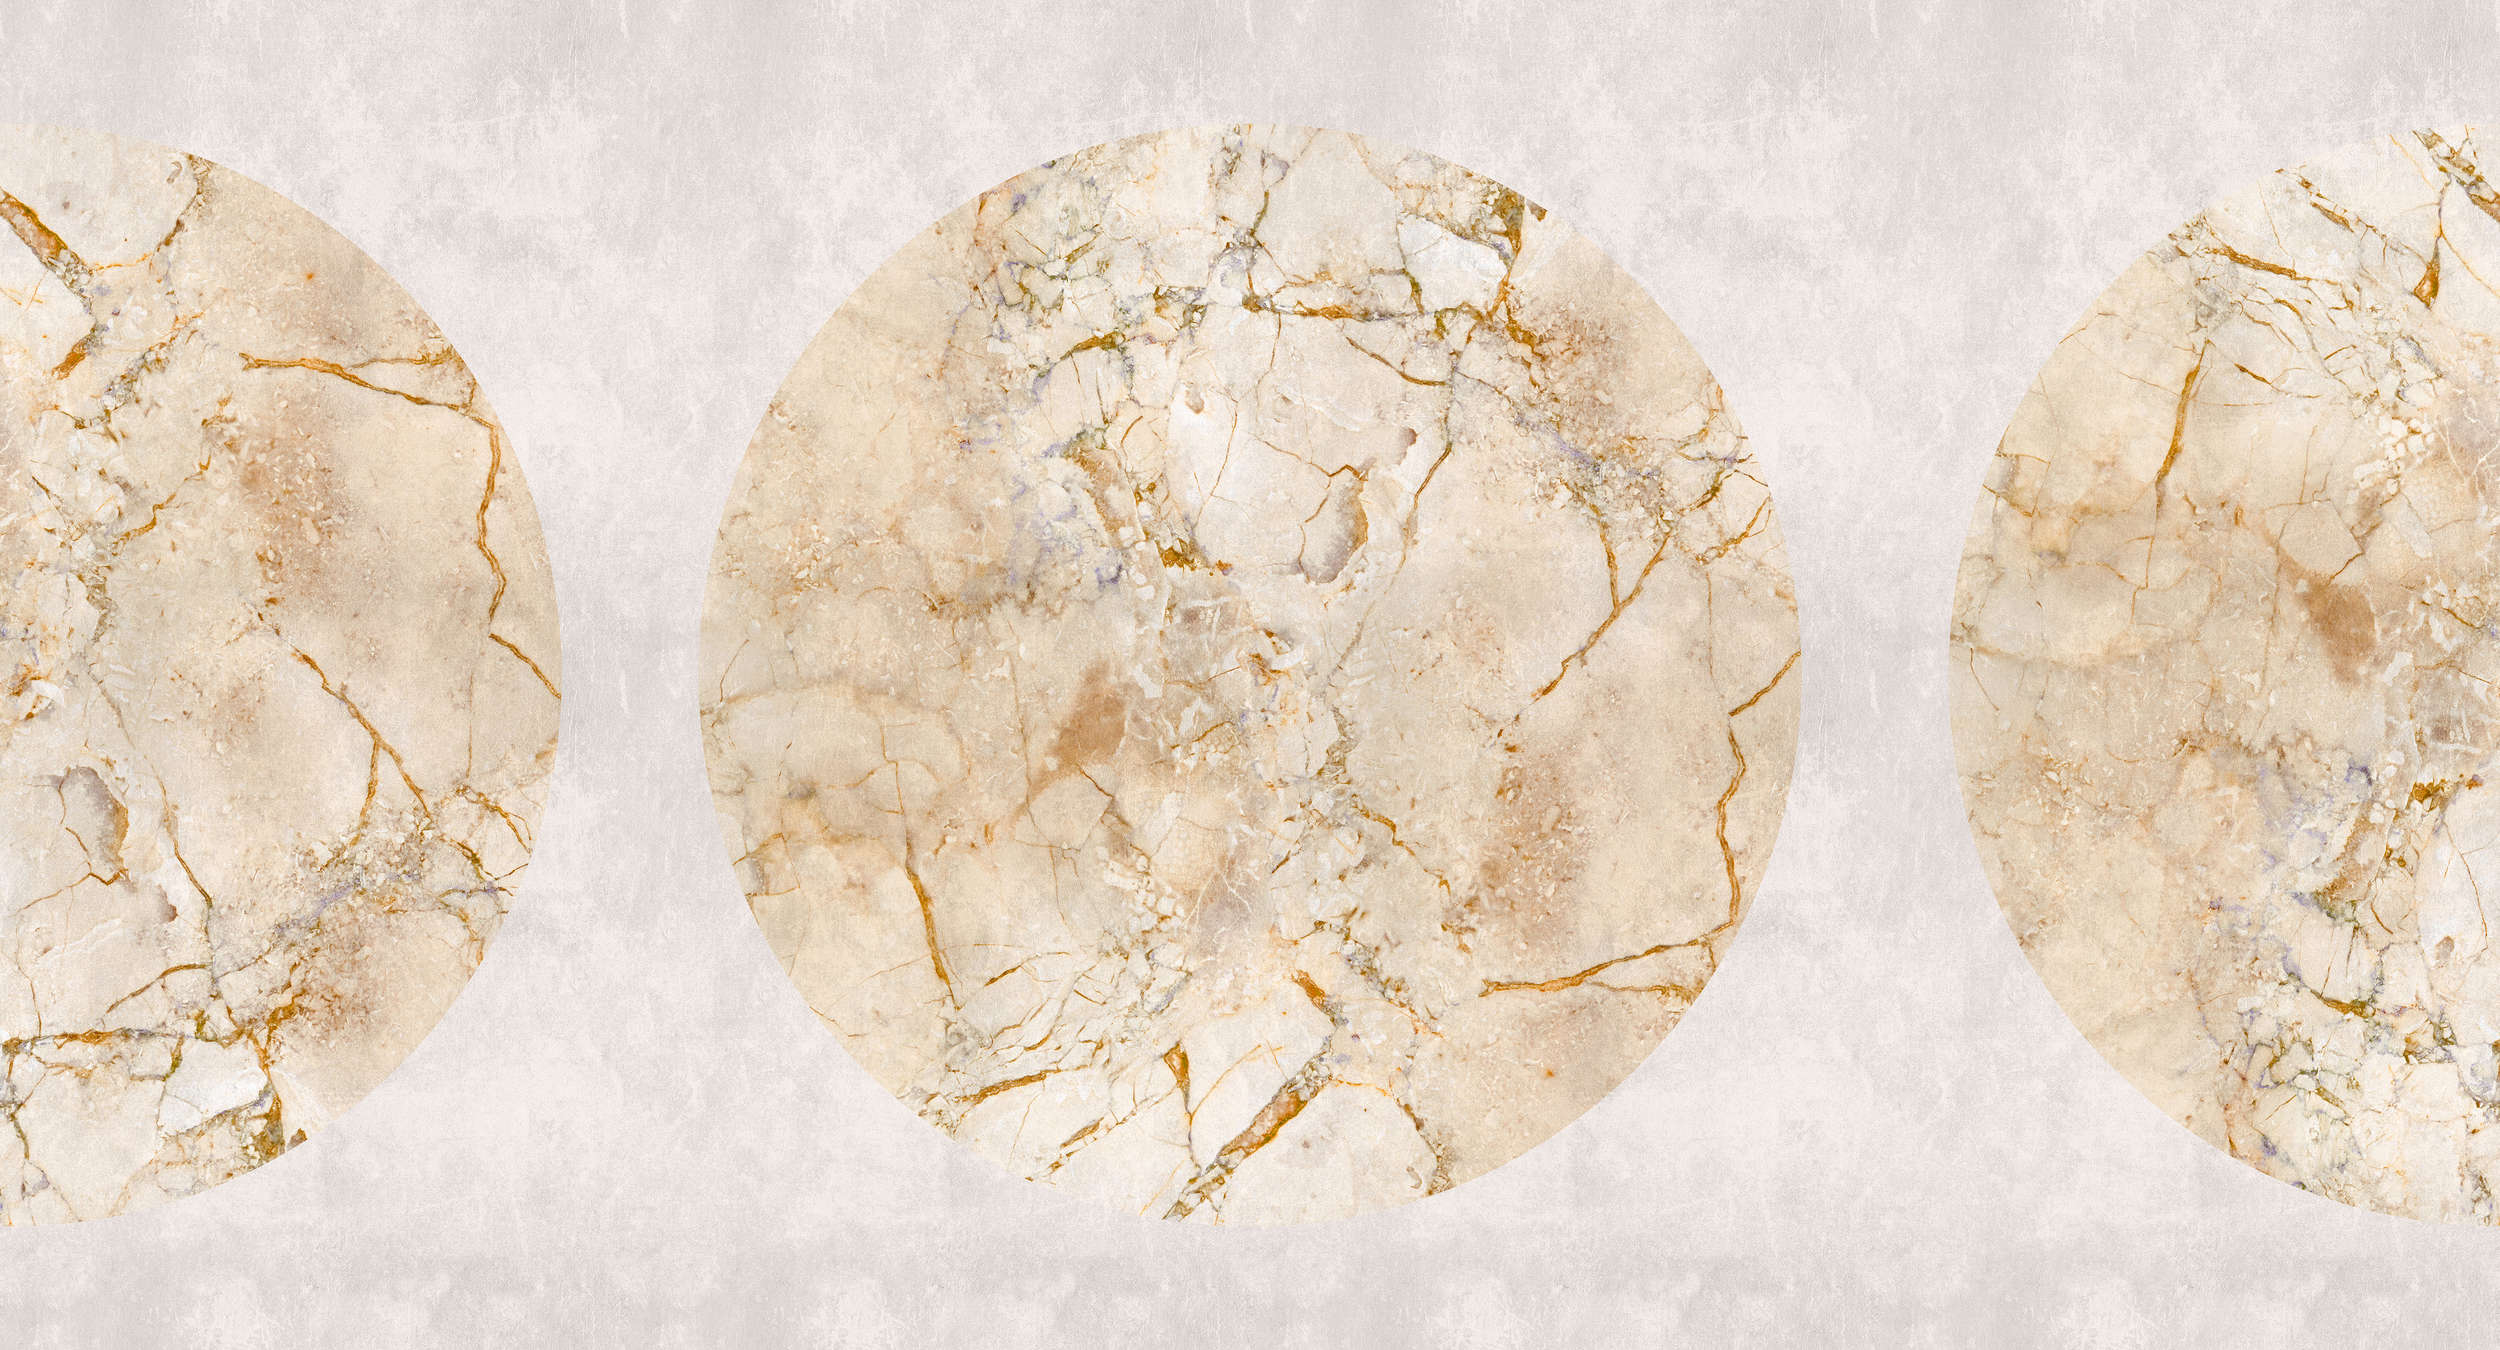             Venus 1 - Gouden marmerbehang met cirkelmotief & gipslook
        